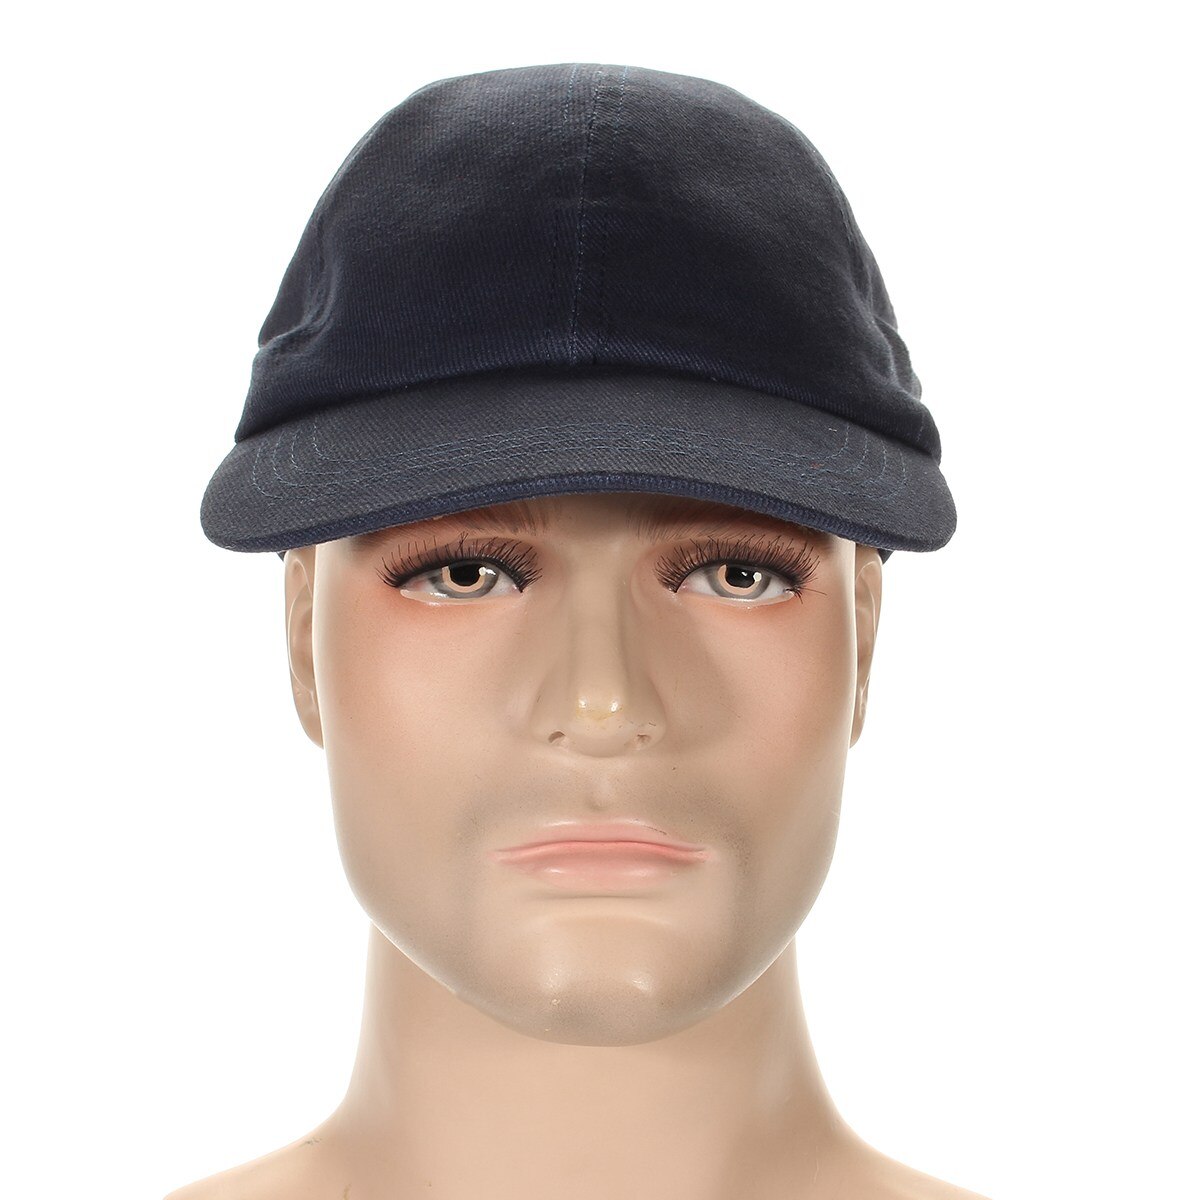 ANPWOO-gorras de béisbol con protección para la cabeza, casco de seguridad ligero, color azul